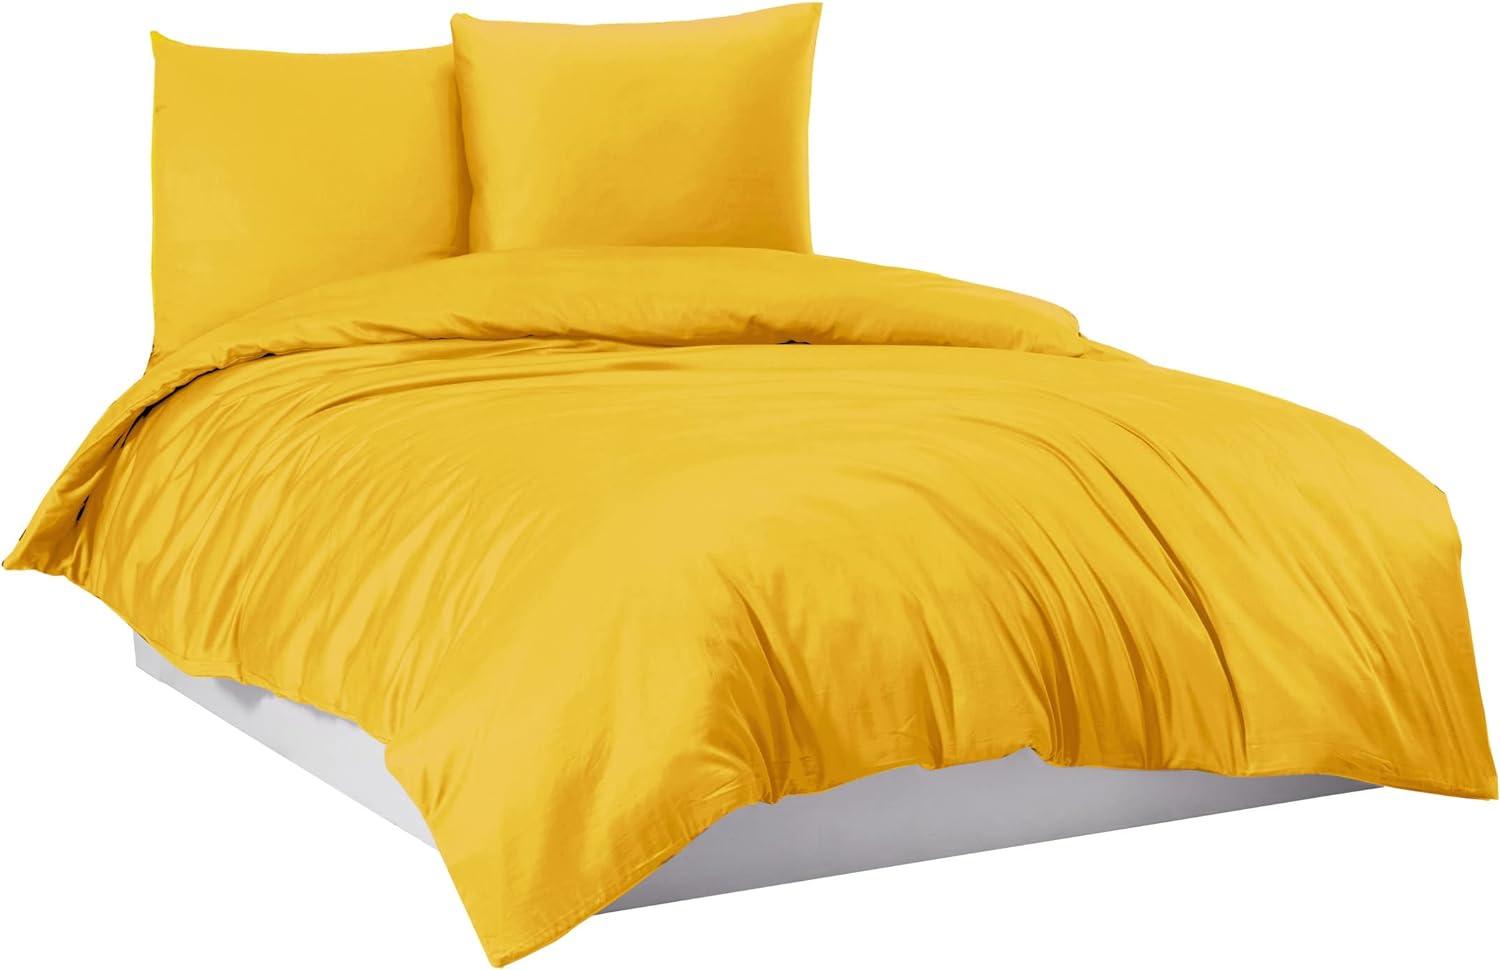 Mixibaby Bettwäsche Bettgarnitur Bettbezug 100% Baumwolle 135x200 155x220 200x200 200x220, Farbe:Gelb, Größe:200 x 200 cm Bild 1